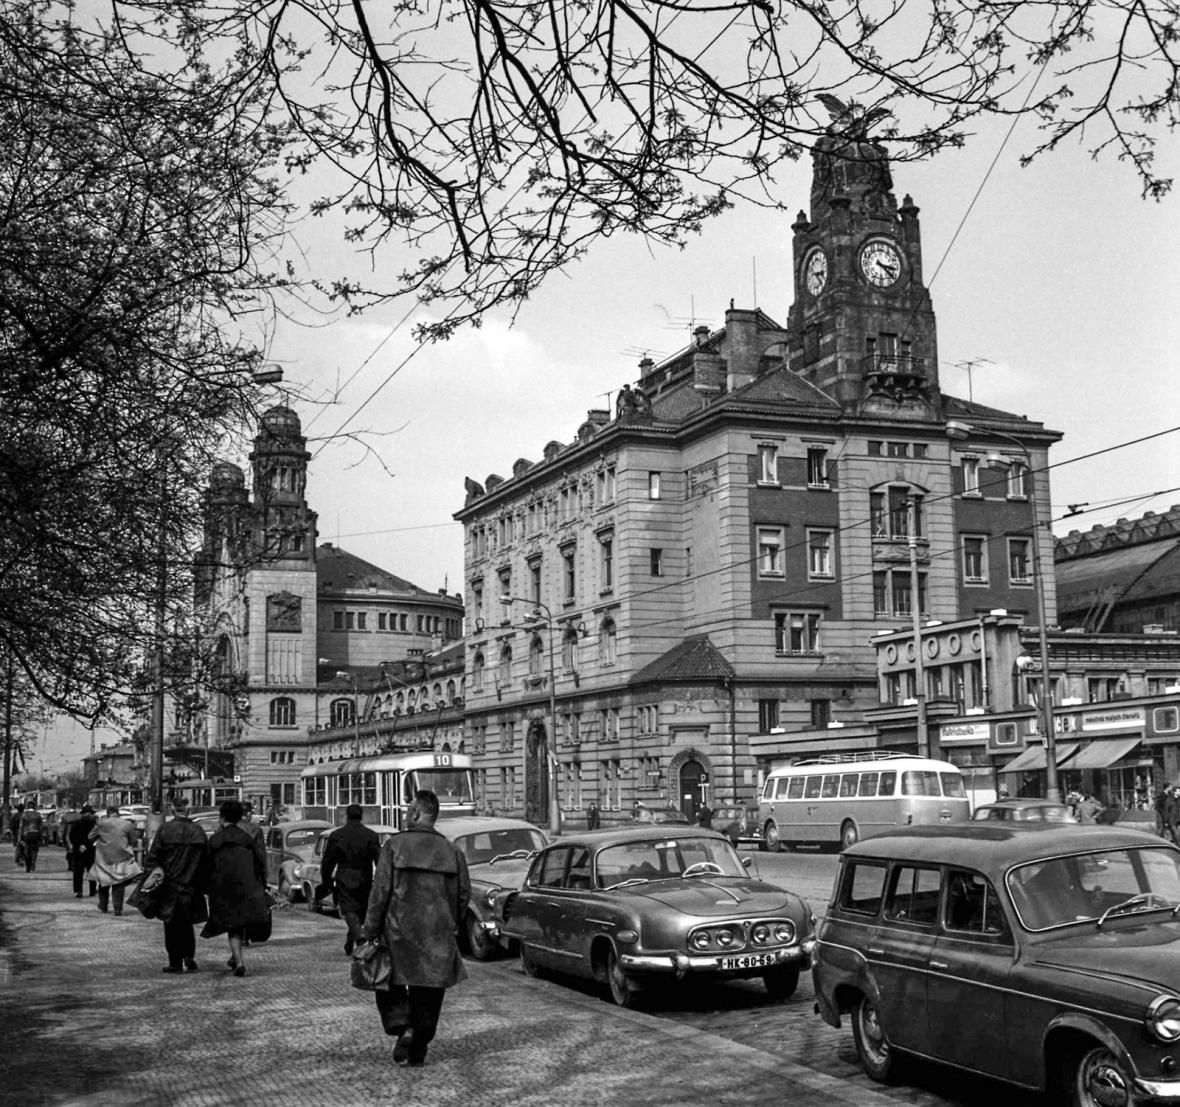 Tramvaje před hlavním nádražím v Praze, rok 1966.